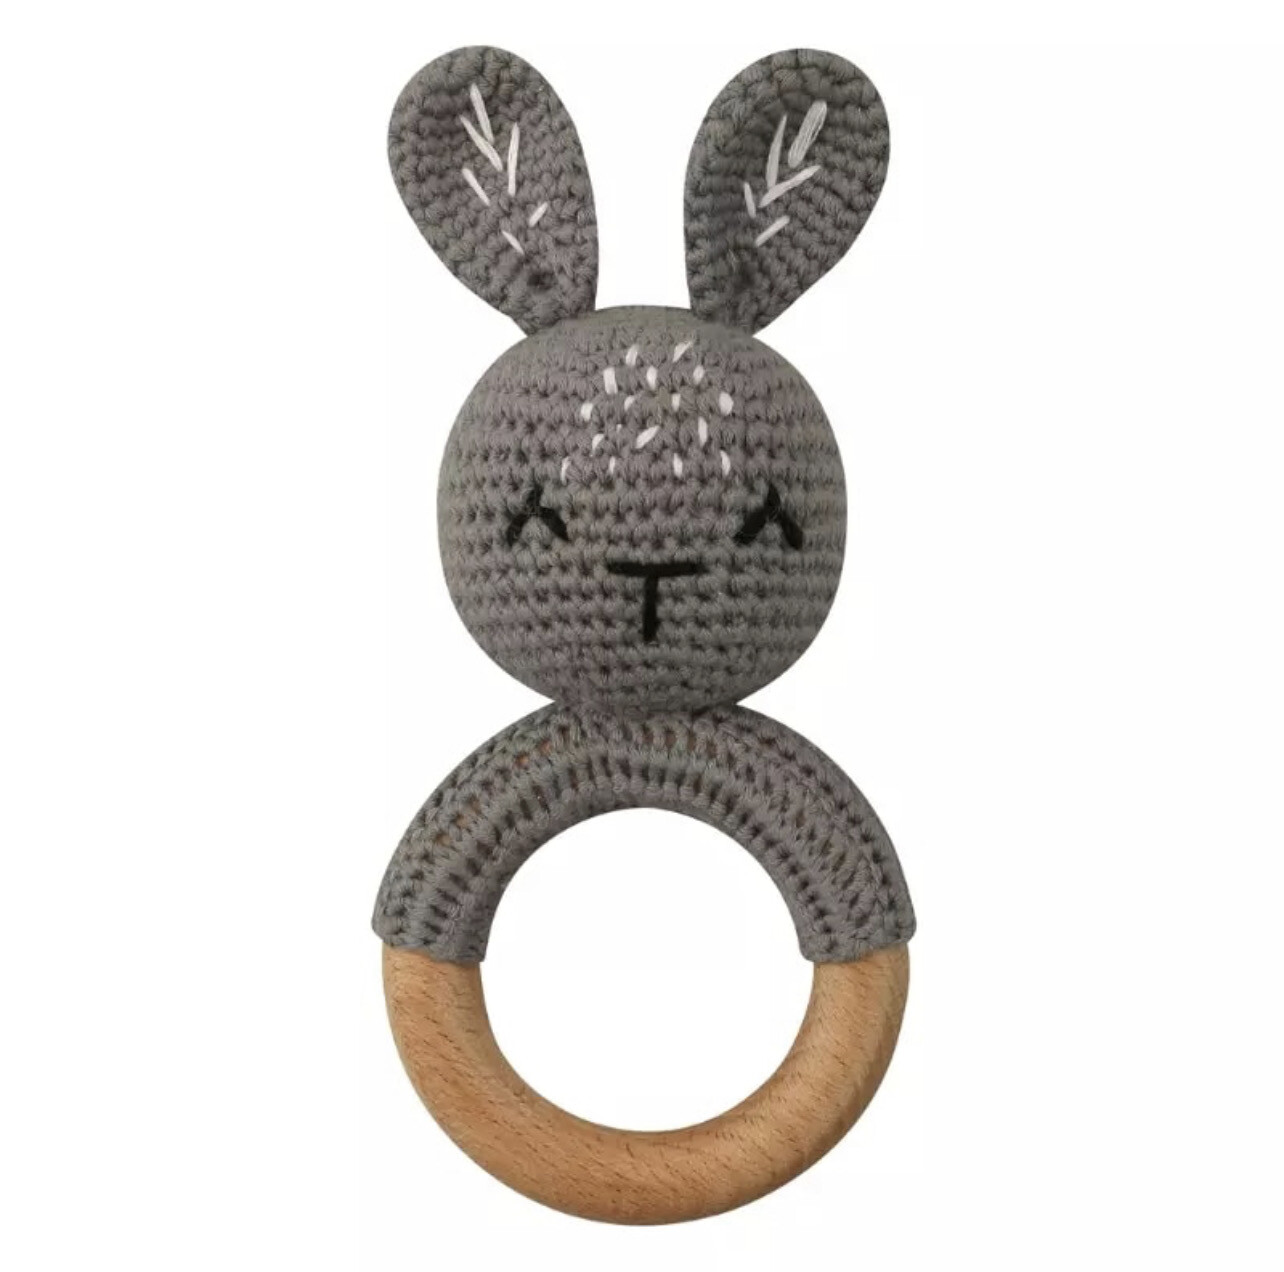 Crochet Bunny Rattle Baby Toy Teether